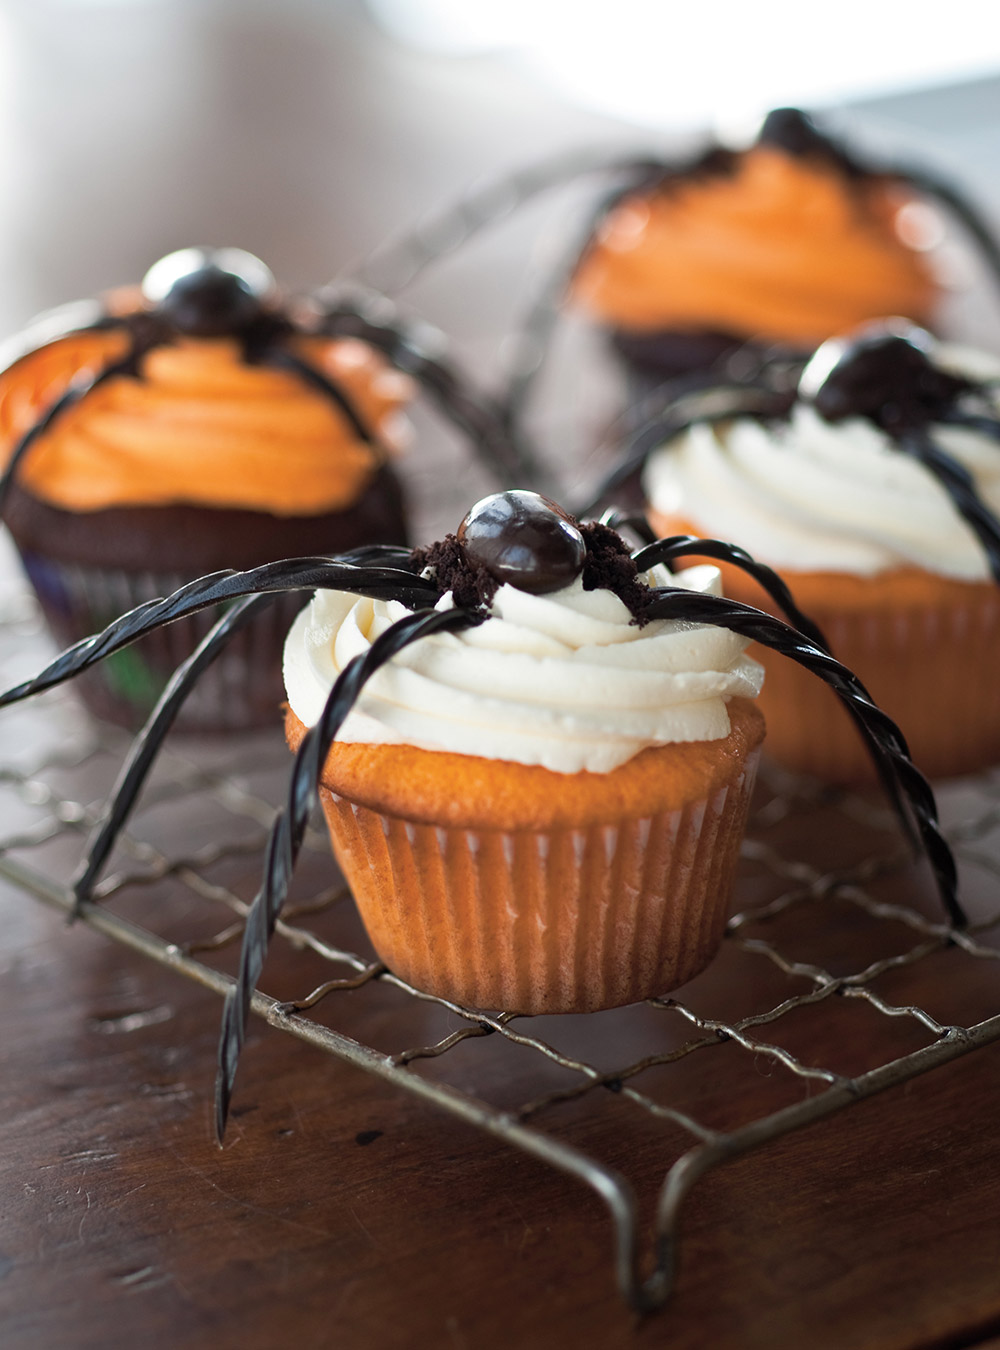 Spider Cupcakes 